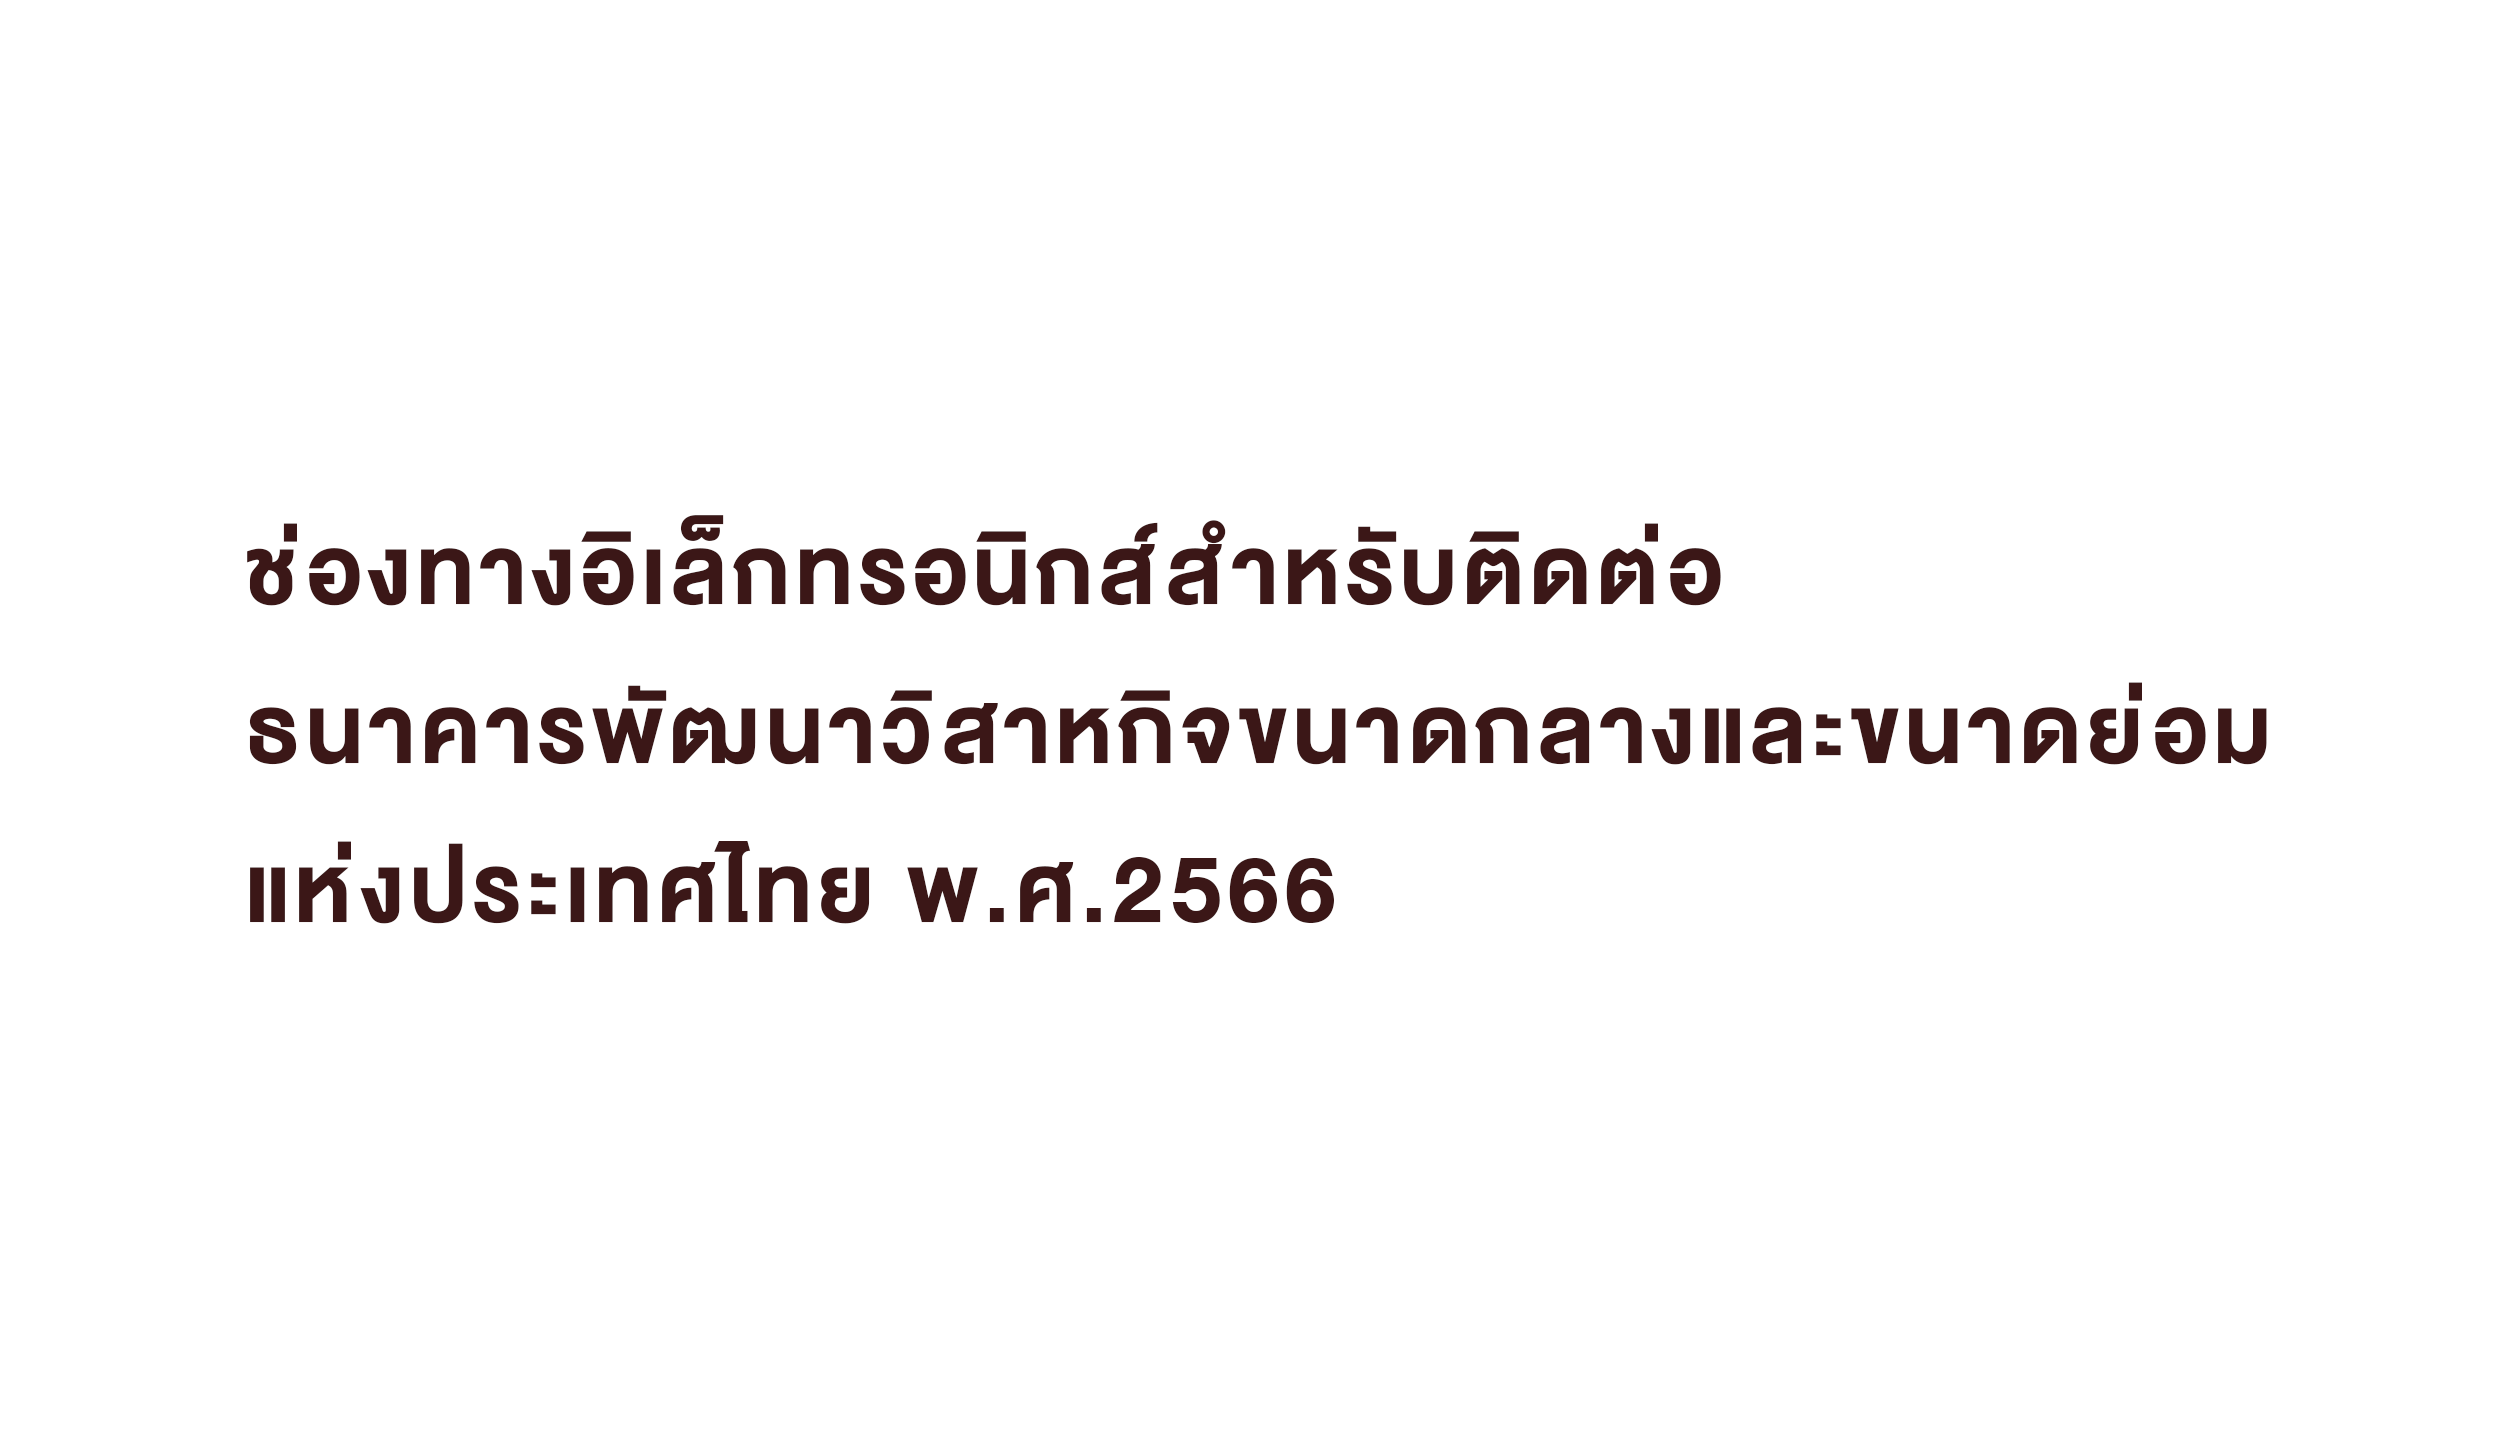 ช่องทางอิเล็กทรอนิกส์สำหรับติดต่อธนาคารพัฒนาวิสาหกิจขนาดกลางและขนาดย่อมแห่งประเทศไทย พ.ศ.2566